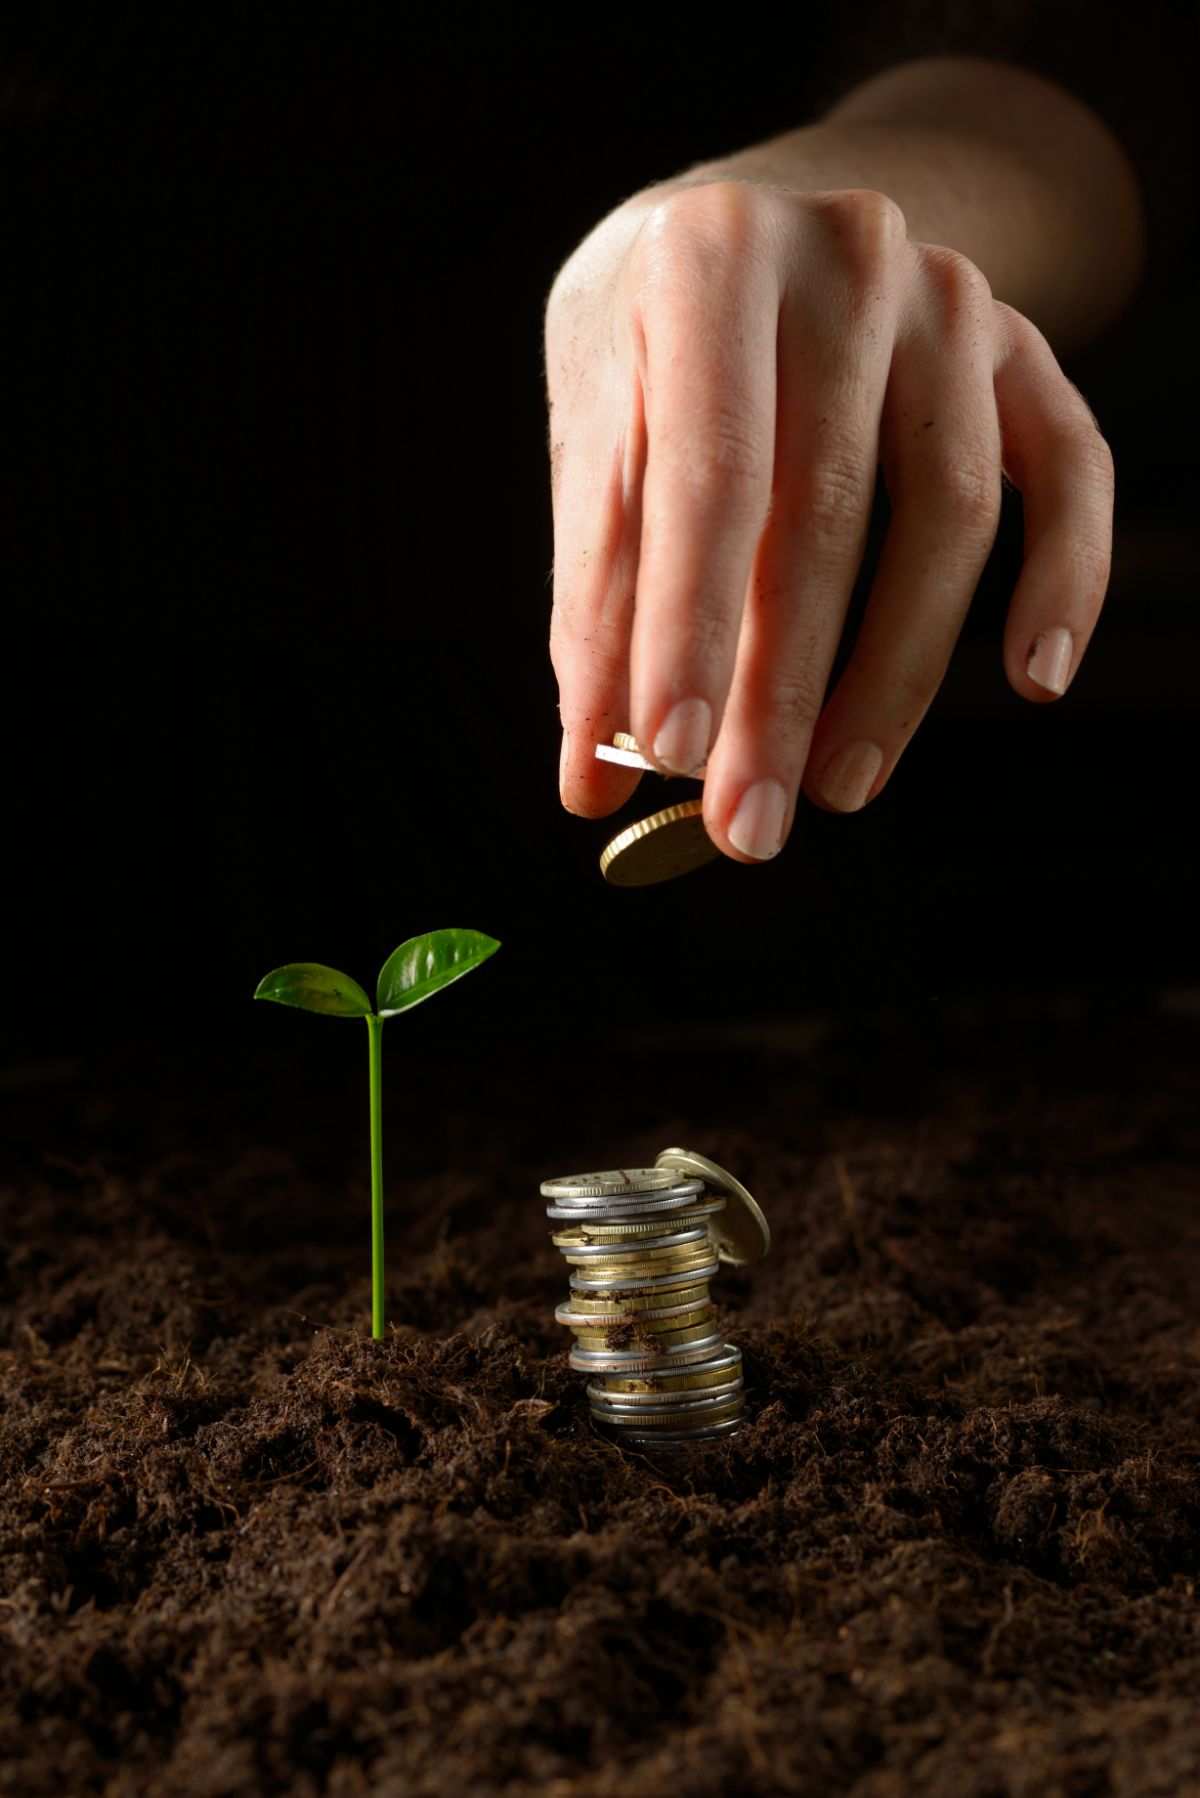 Main de femme plaçant une pièce sur une pile de pièces de monnaie dans la terre près d’une plante en croissance.